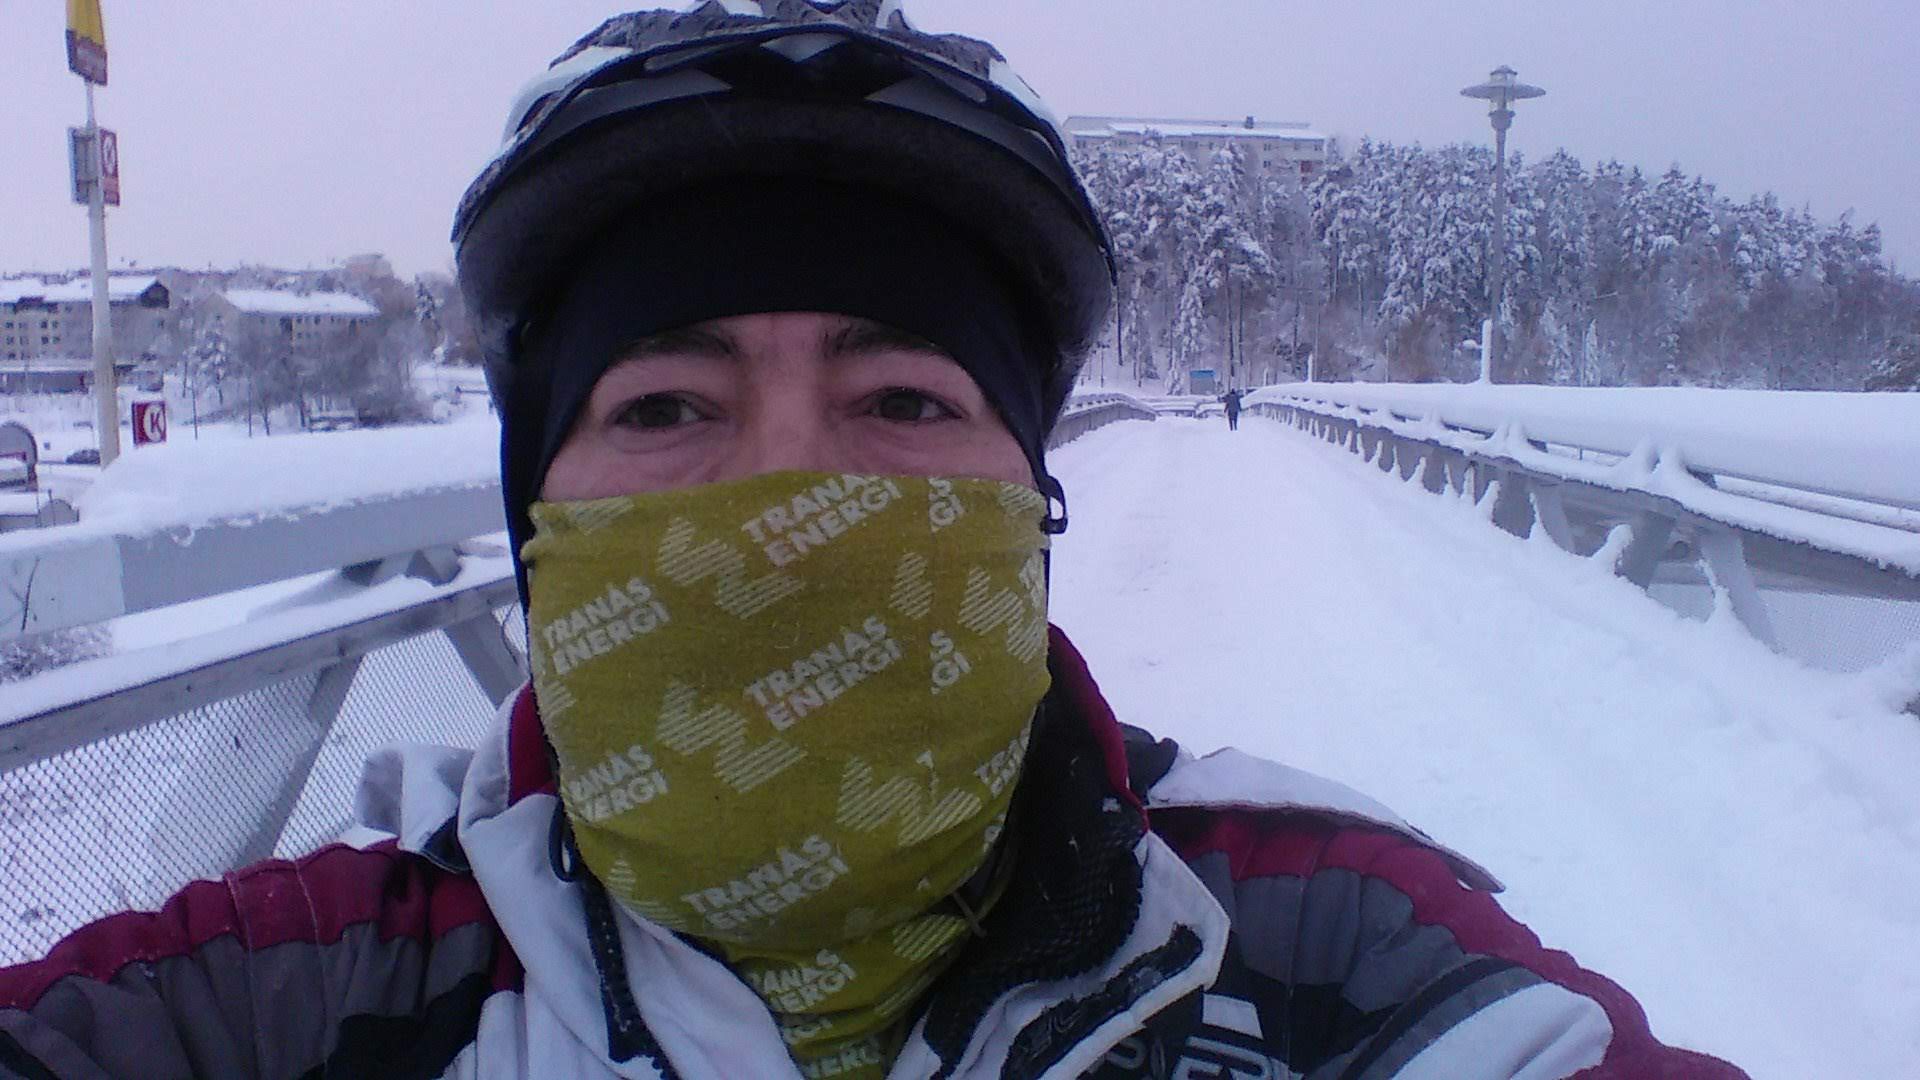 Foto minha com roupas e capacete que uso quando ando de bicicleta sobre uma ponte coberta de neve.